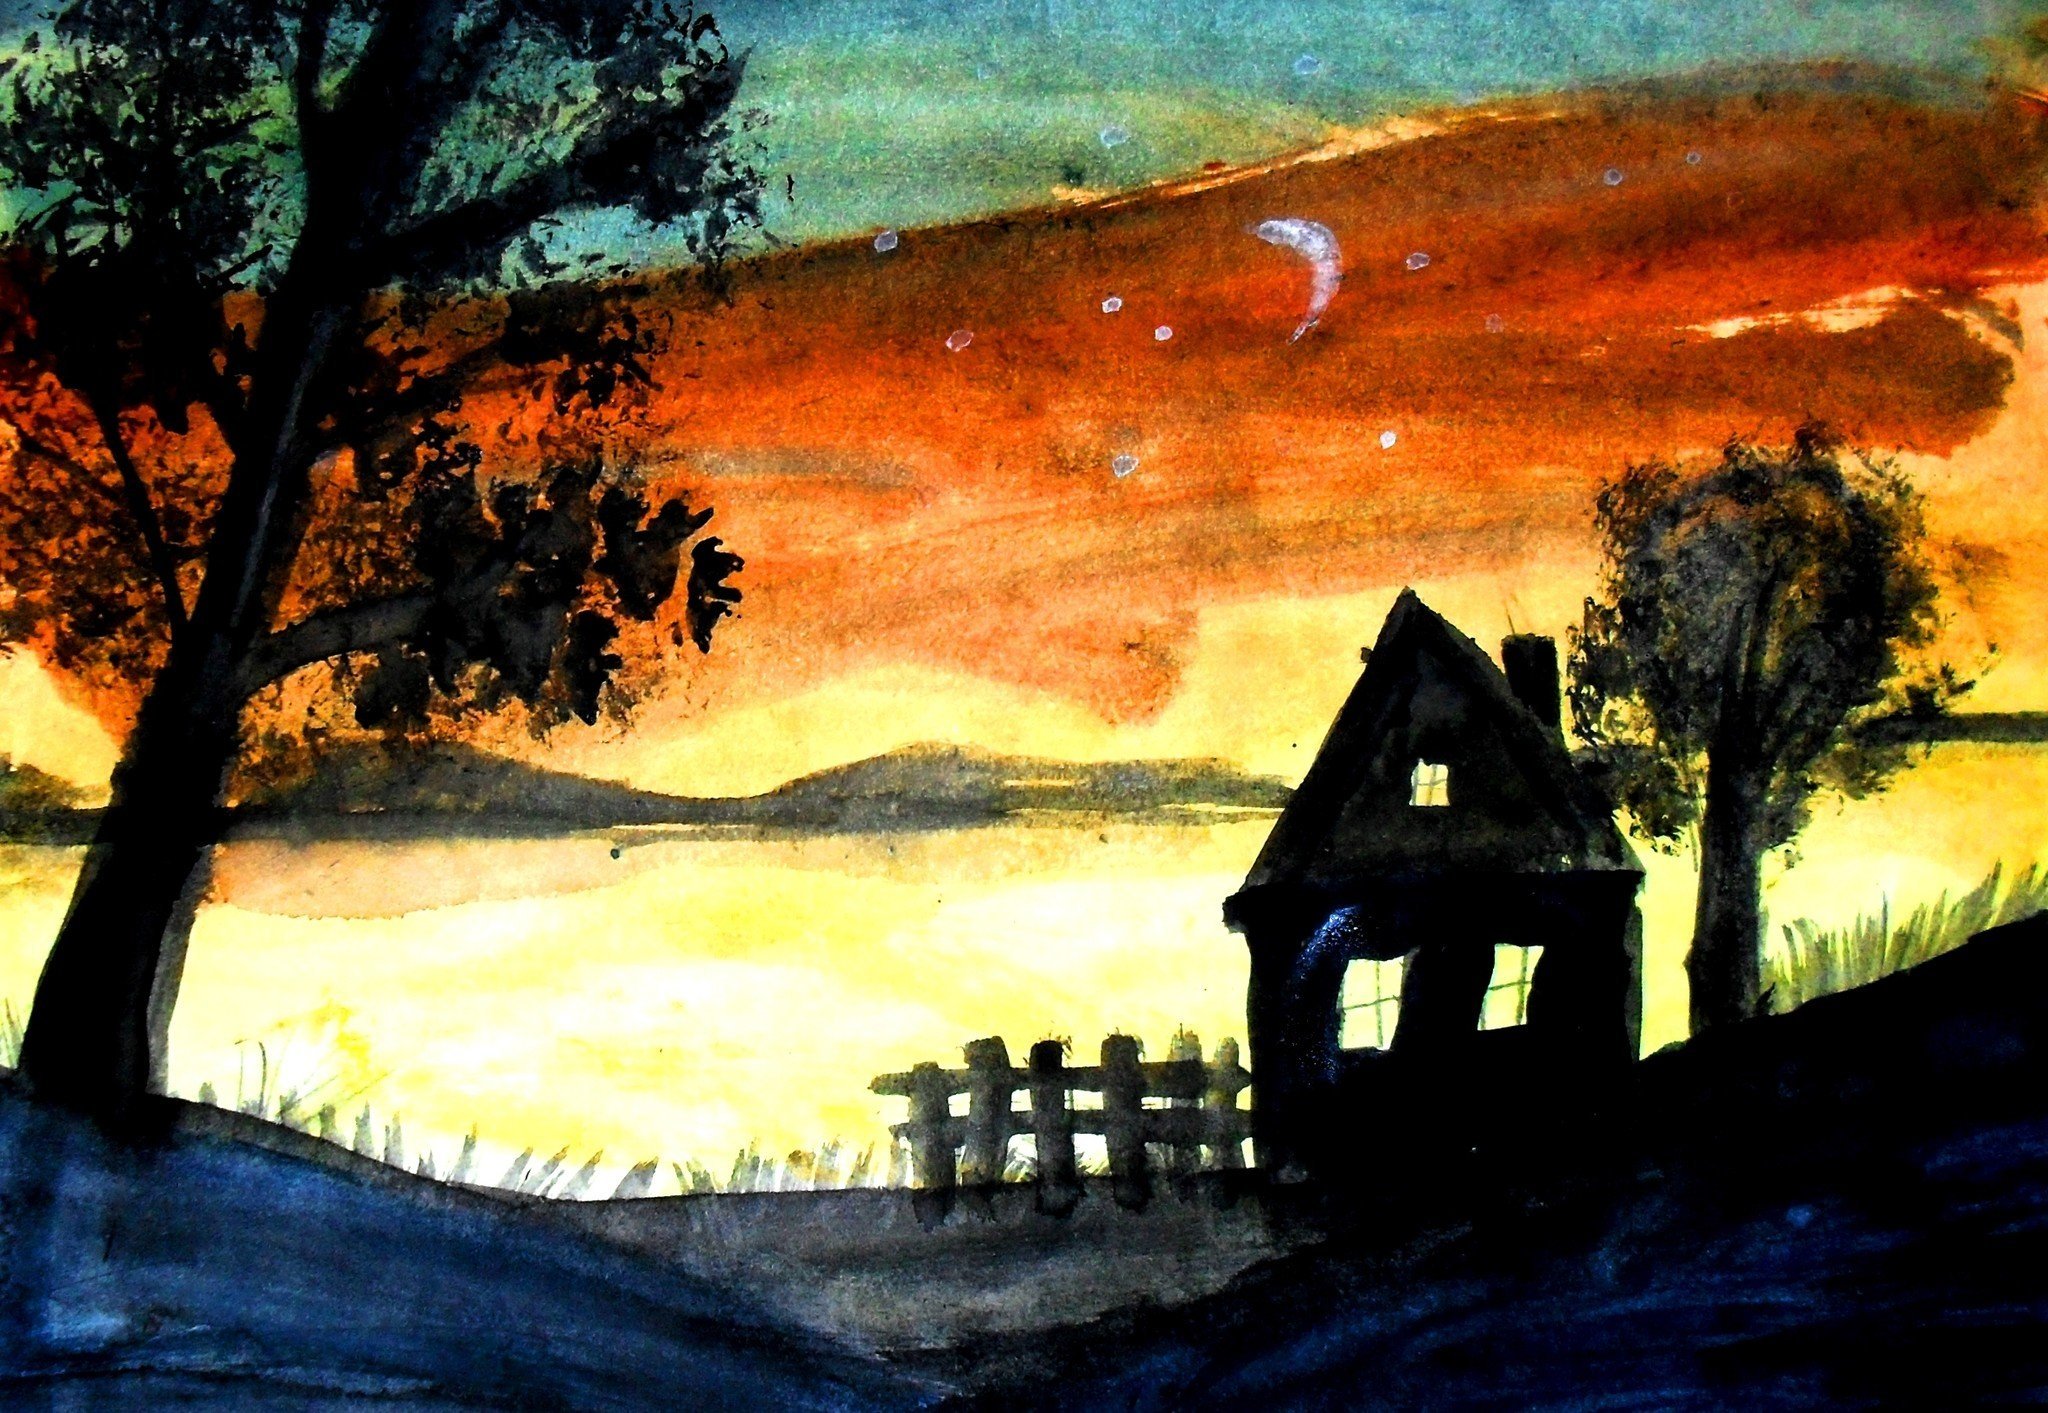 Ю в поздним вечером. Вечер рисунок. Иллюстрация ночного пейзажа. Изо ночной пейзаж. Вечерний пейзаж рисунок.